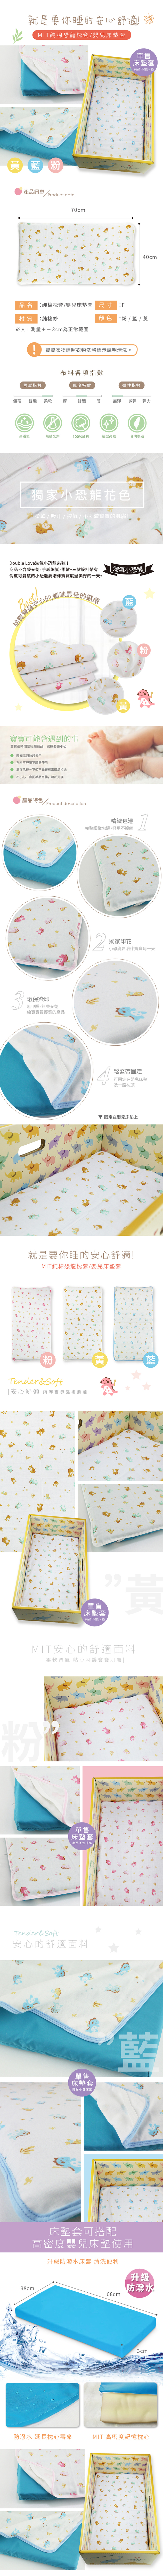 台灣製造 DL純棉嬰兒床墊套 枕頭套 枕套 高密度透氣紗布 嬰兒枕 防塵 吸水透氣【FB0007】